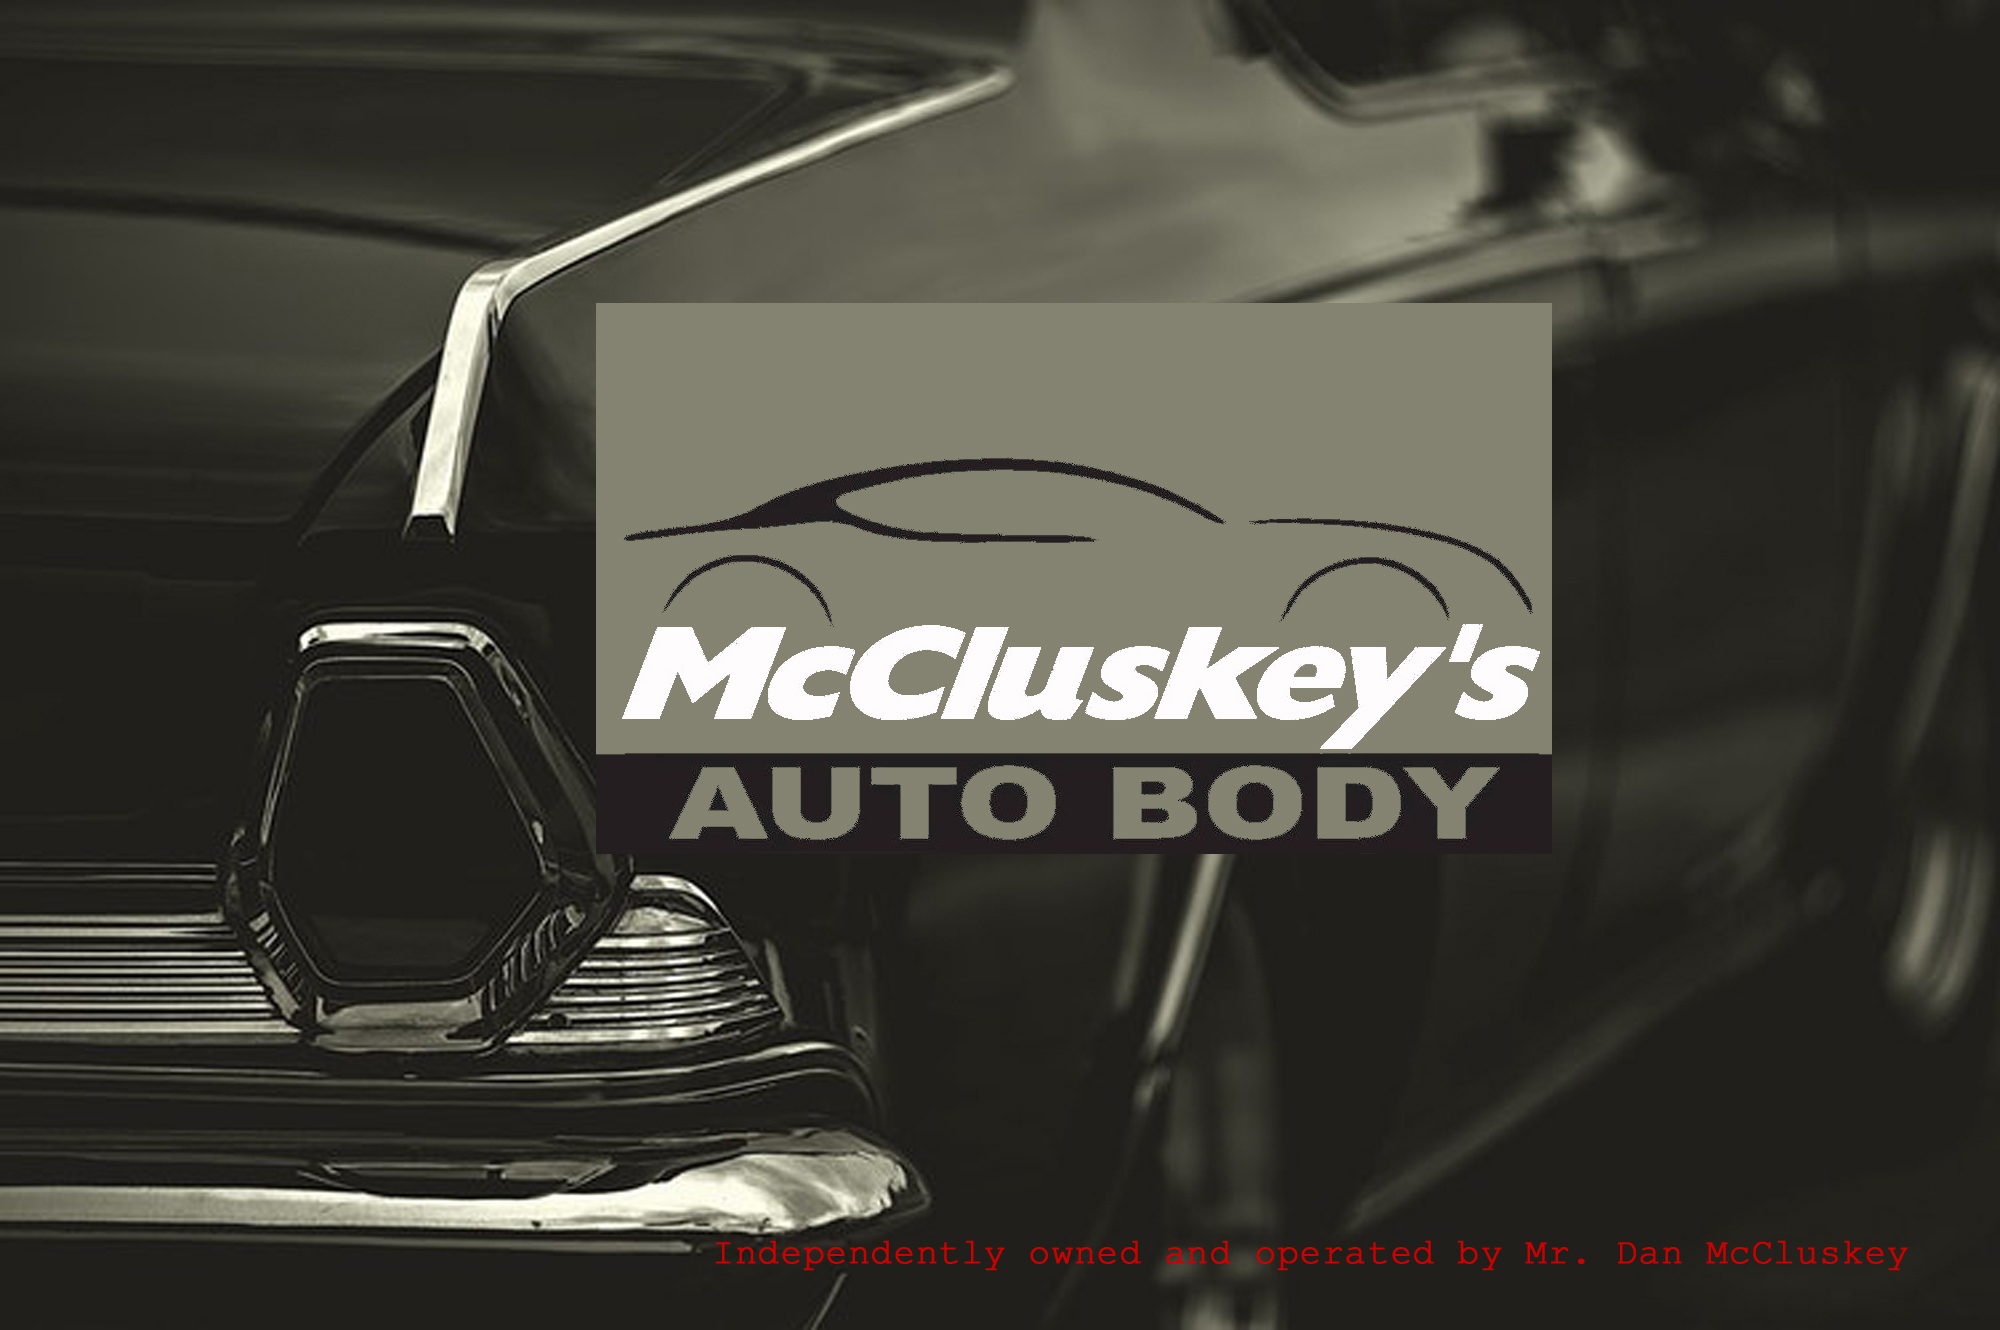 McCluskey's Auto Body